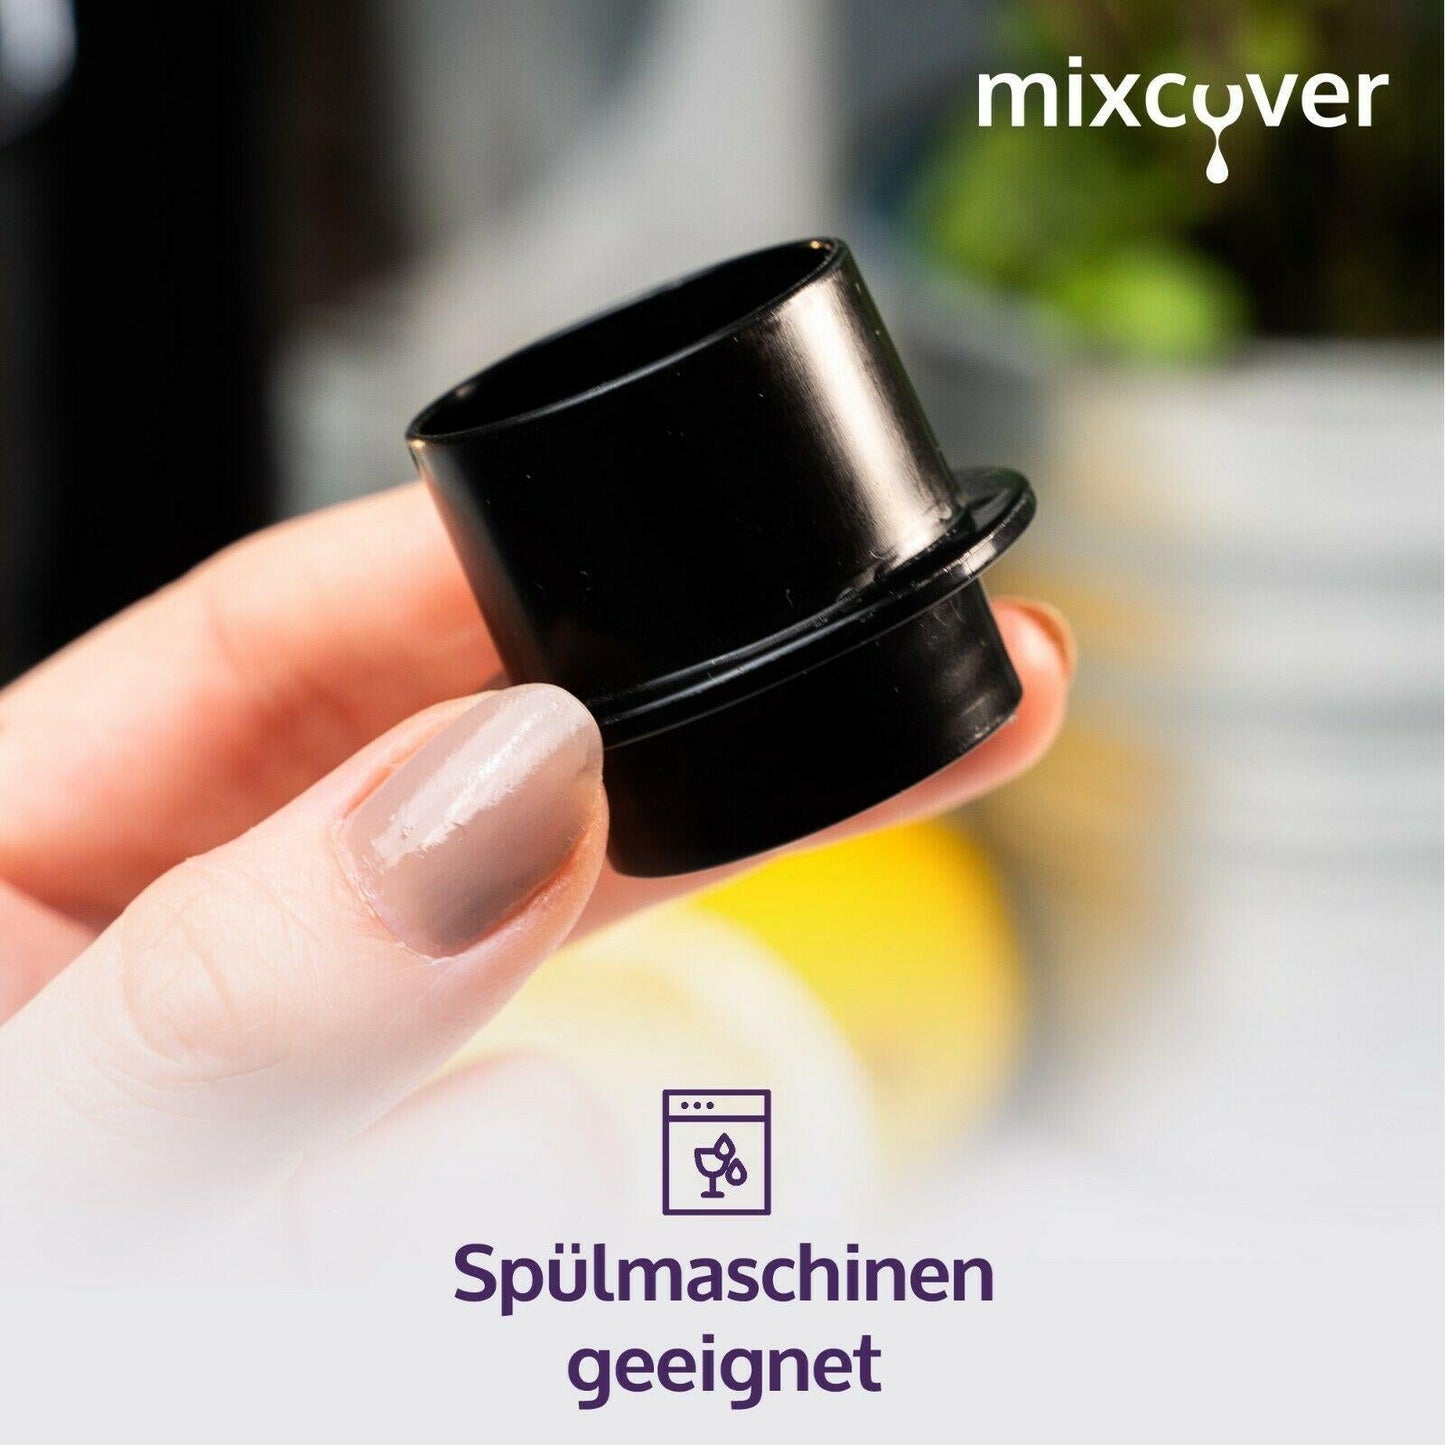 mixcover PET-Flaschen-Adapter passend für SodaStream Easy-für kleine PET Flasche - Mixcover - Mixcover